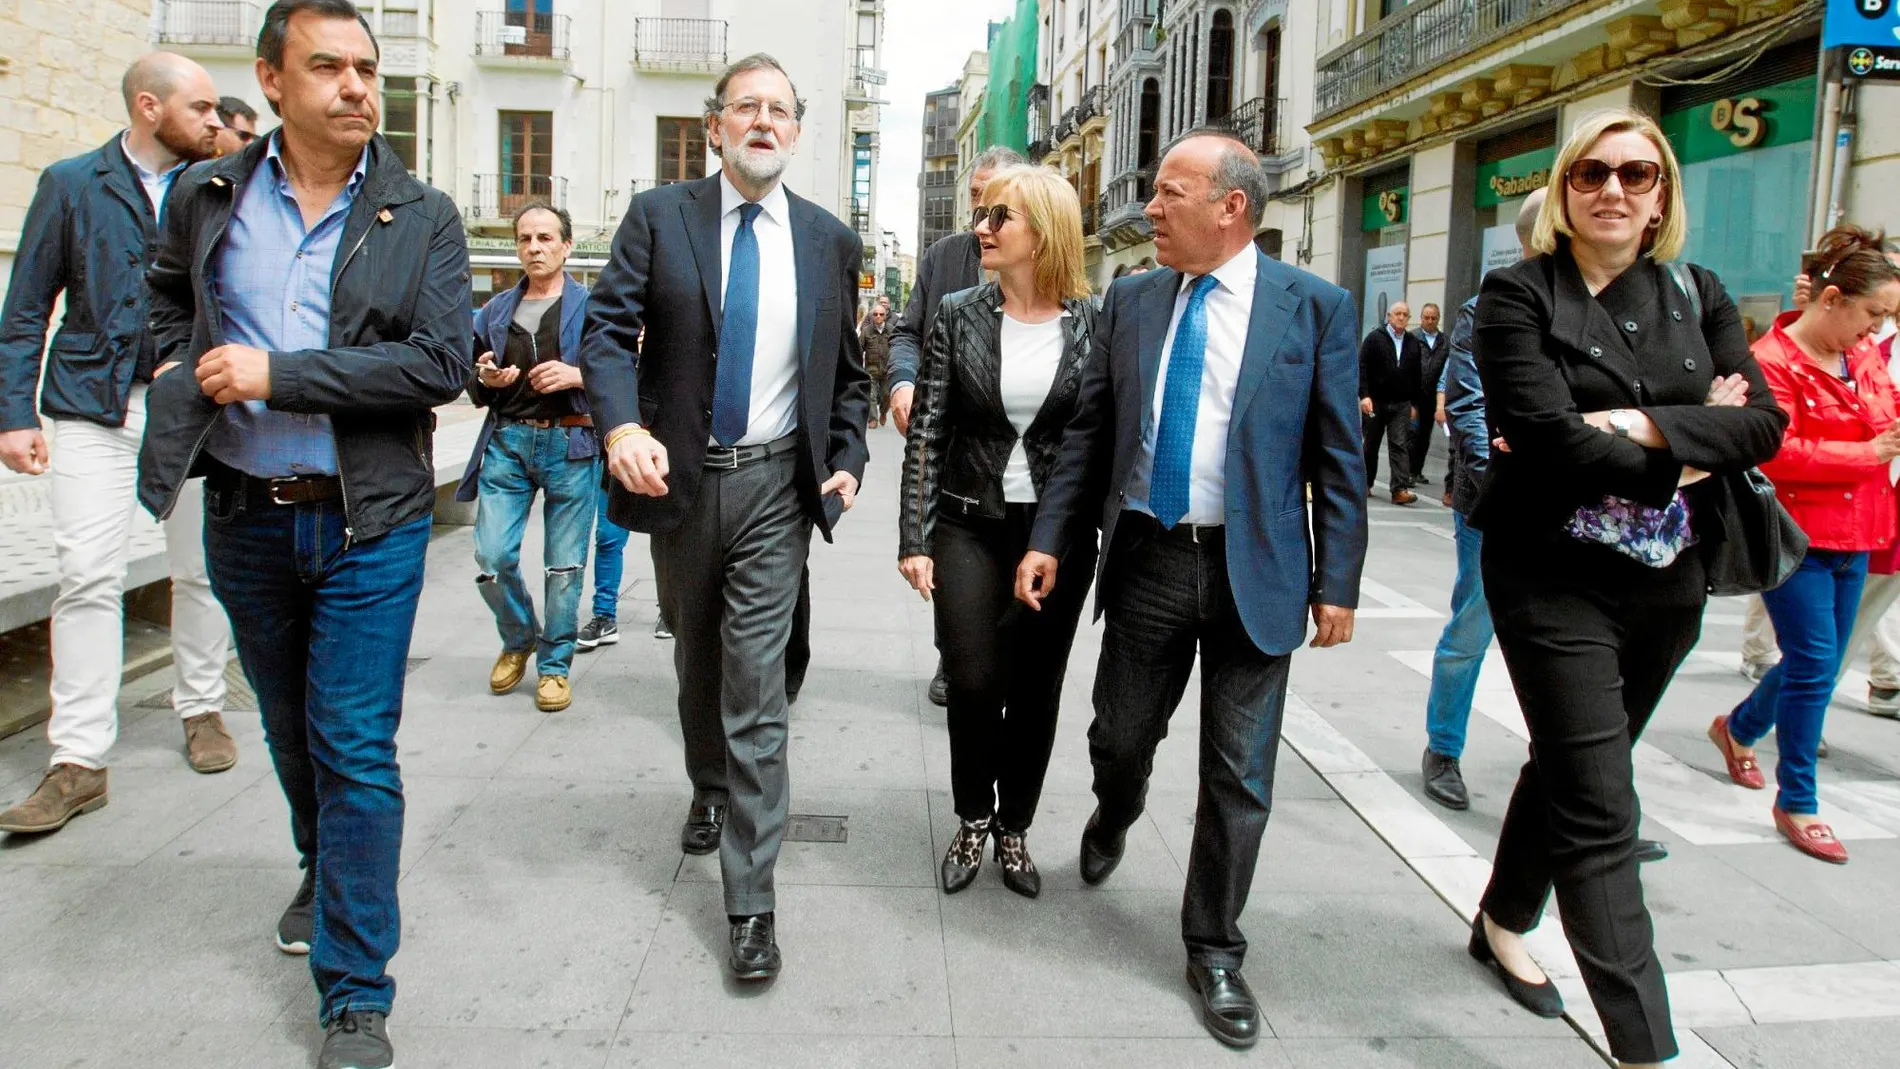 Mariano Rajoy, en la imagen junto al senador Fernando Martínez-Maíllo (izda.), participó ayer en un acto de apoyo a los candidatos populares a la Alcaldía de la ciudad, la Diputación y la Junta